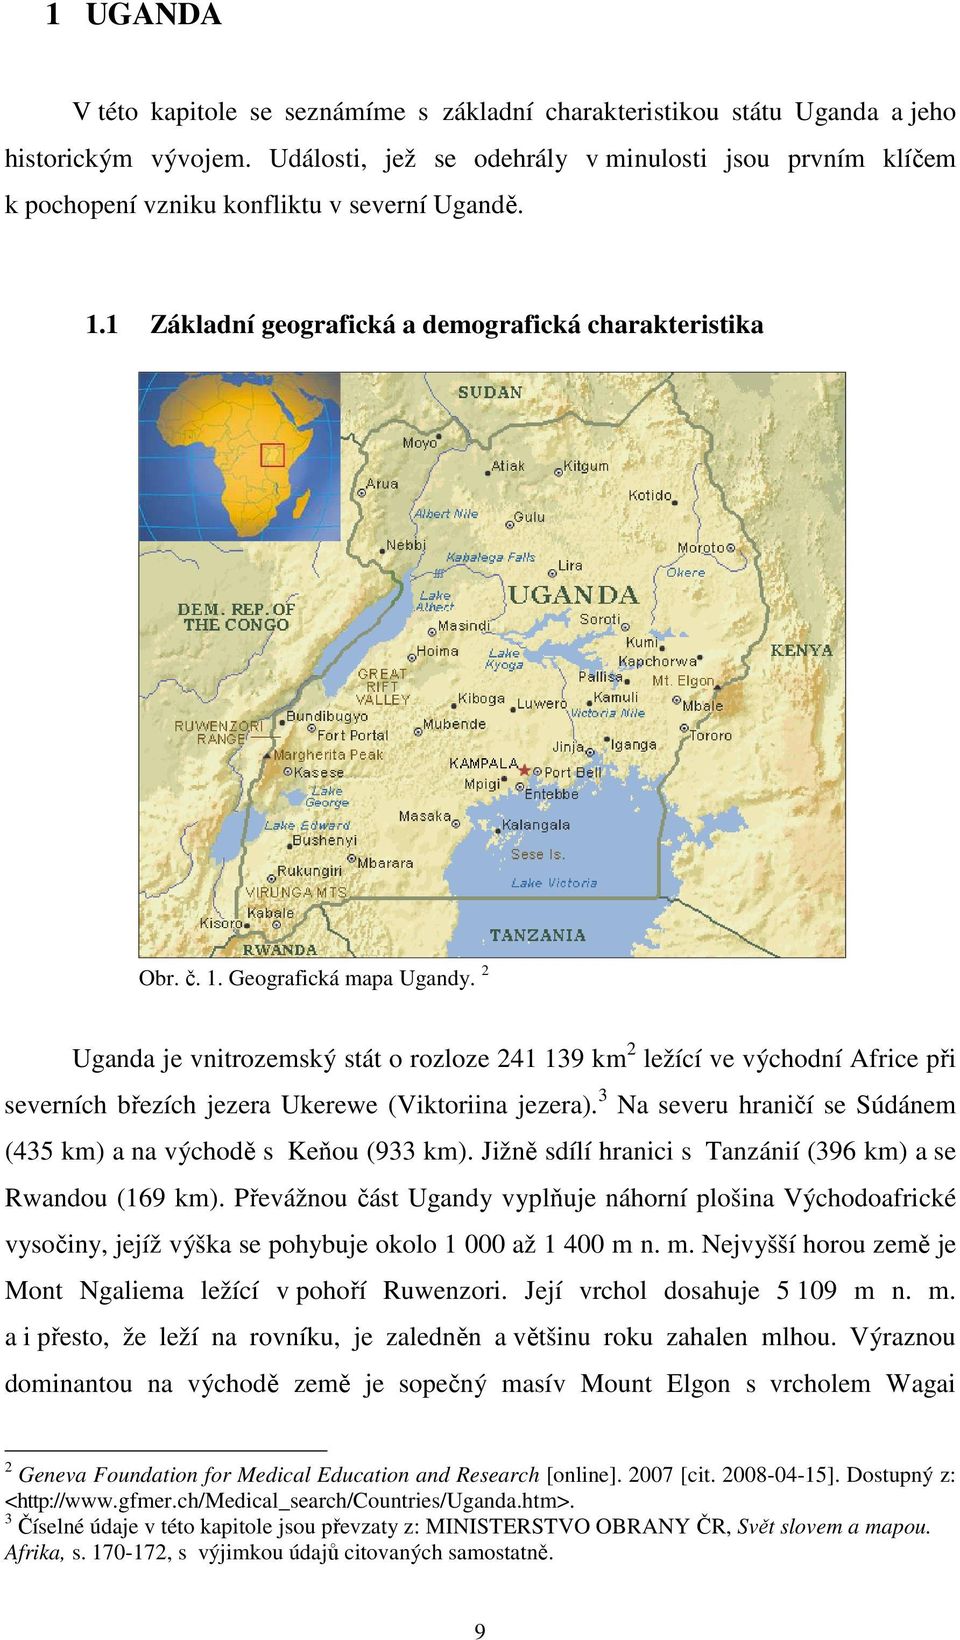 2 Uganda je vnitrozemský stát o rozloze 241 139 km 2 ležící ve východní Africe při severních březích jezera Ukerewe (Viktoriina jezera).